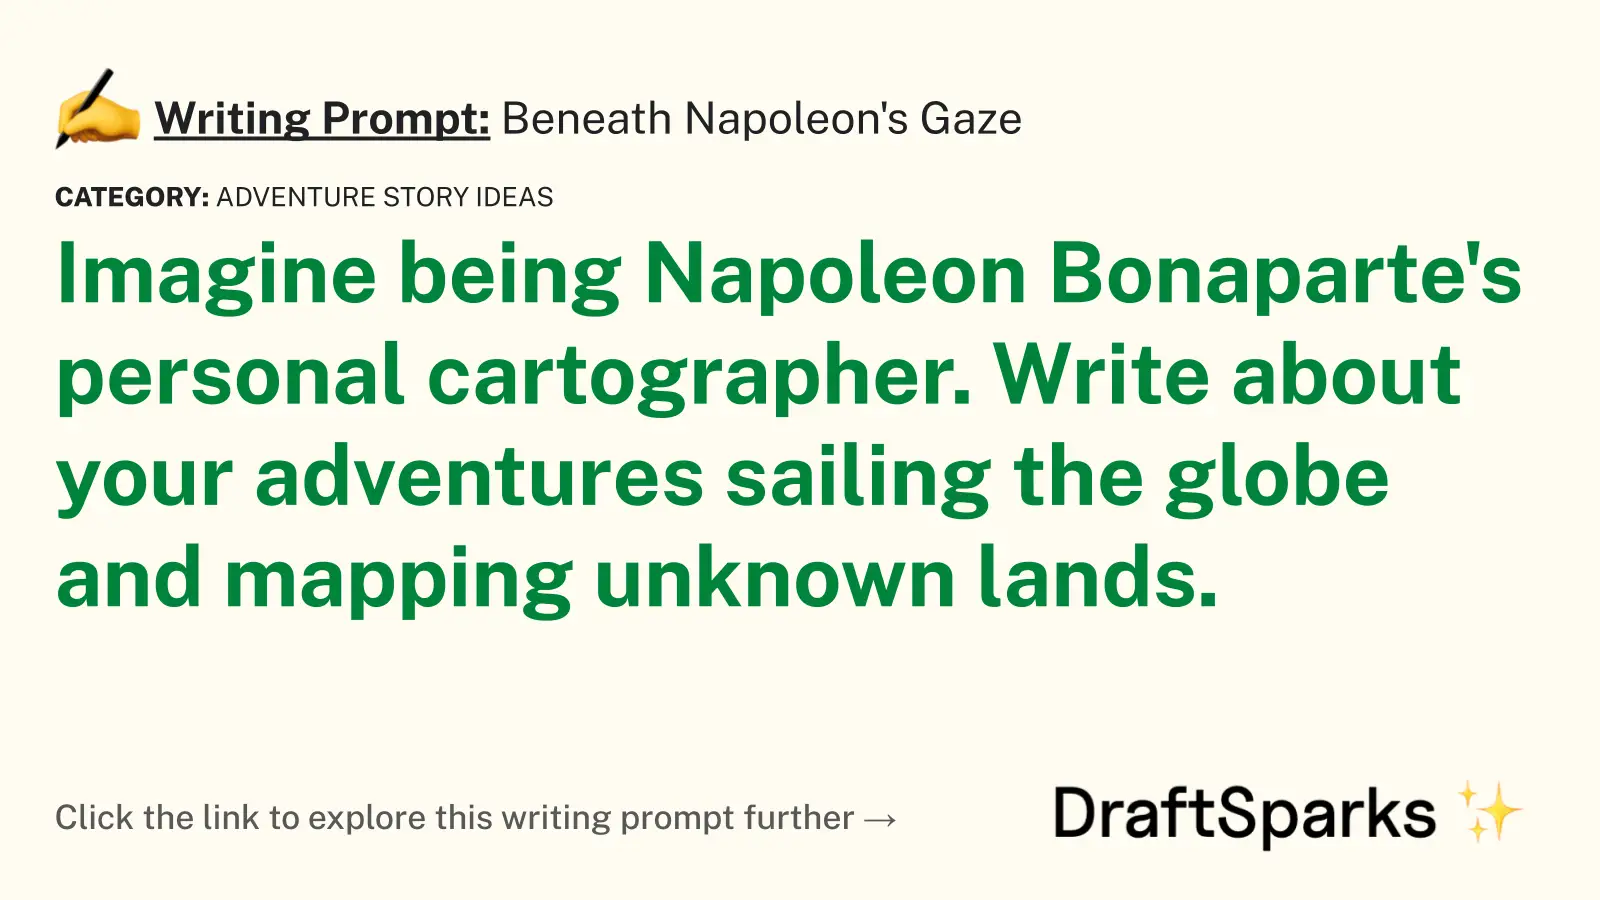 Beneath Napoleon’s Gaze